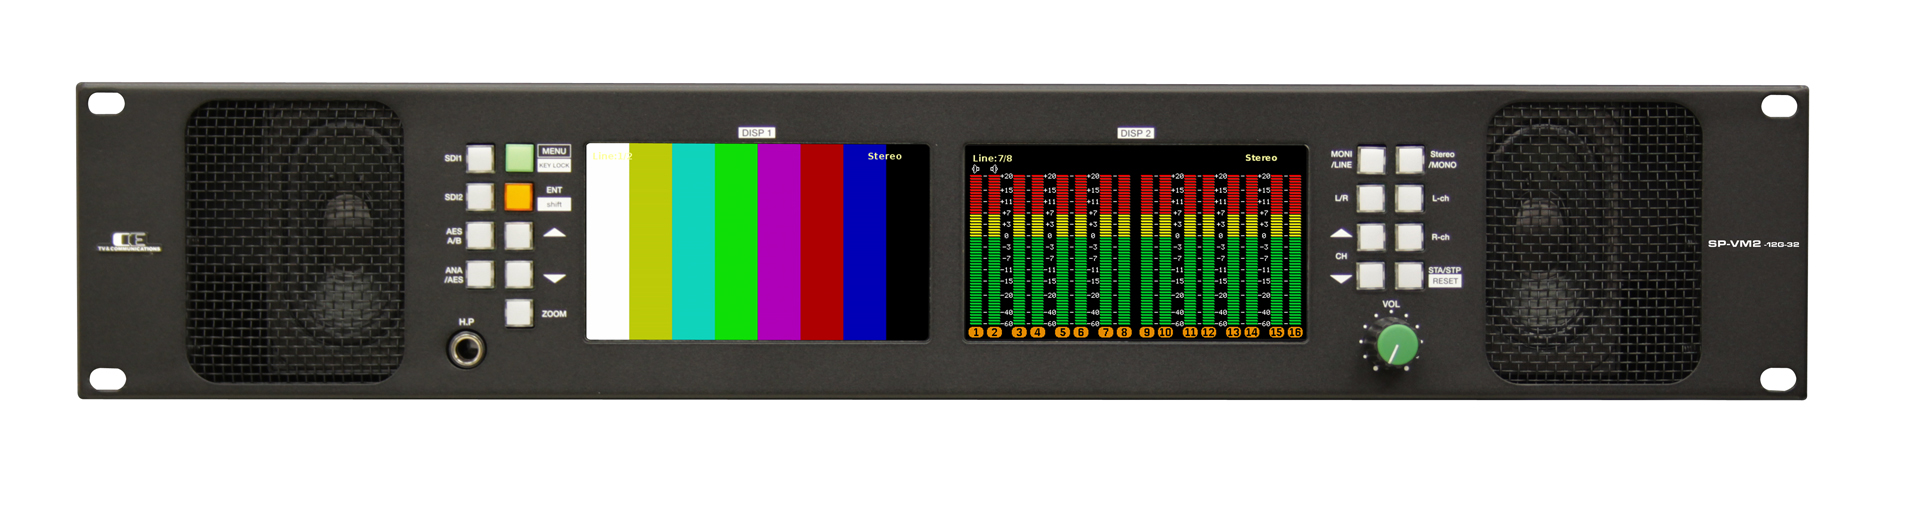 12g オーディオ ビデオ ラウドネス 波形モニタ 2ru ウーハー付 放送業務用 映像 音声機器の開発 製造 販売はコスミックエンジニアリング